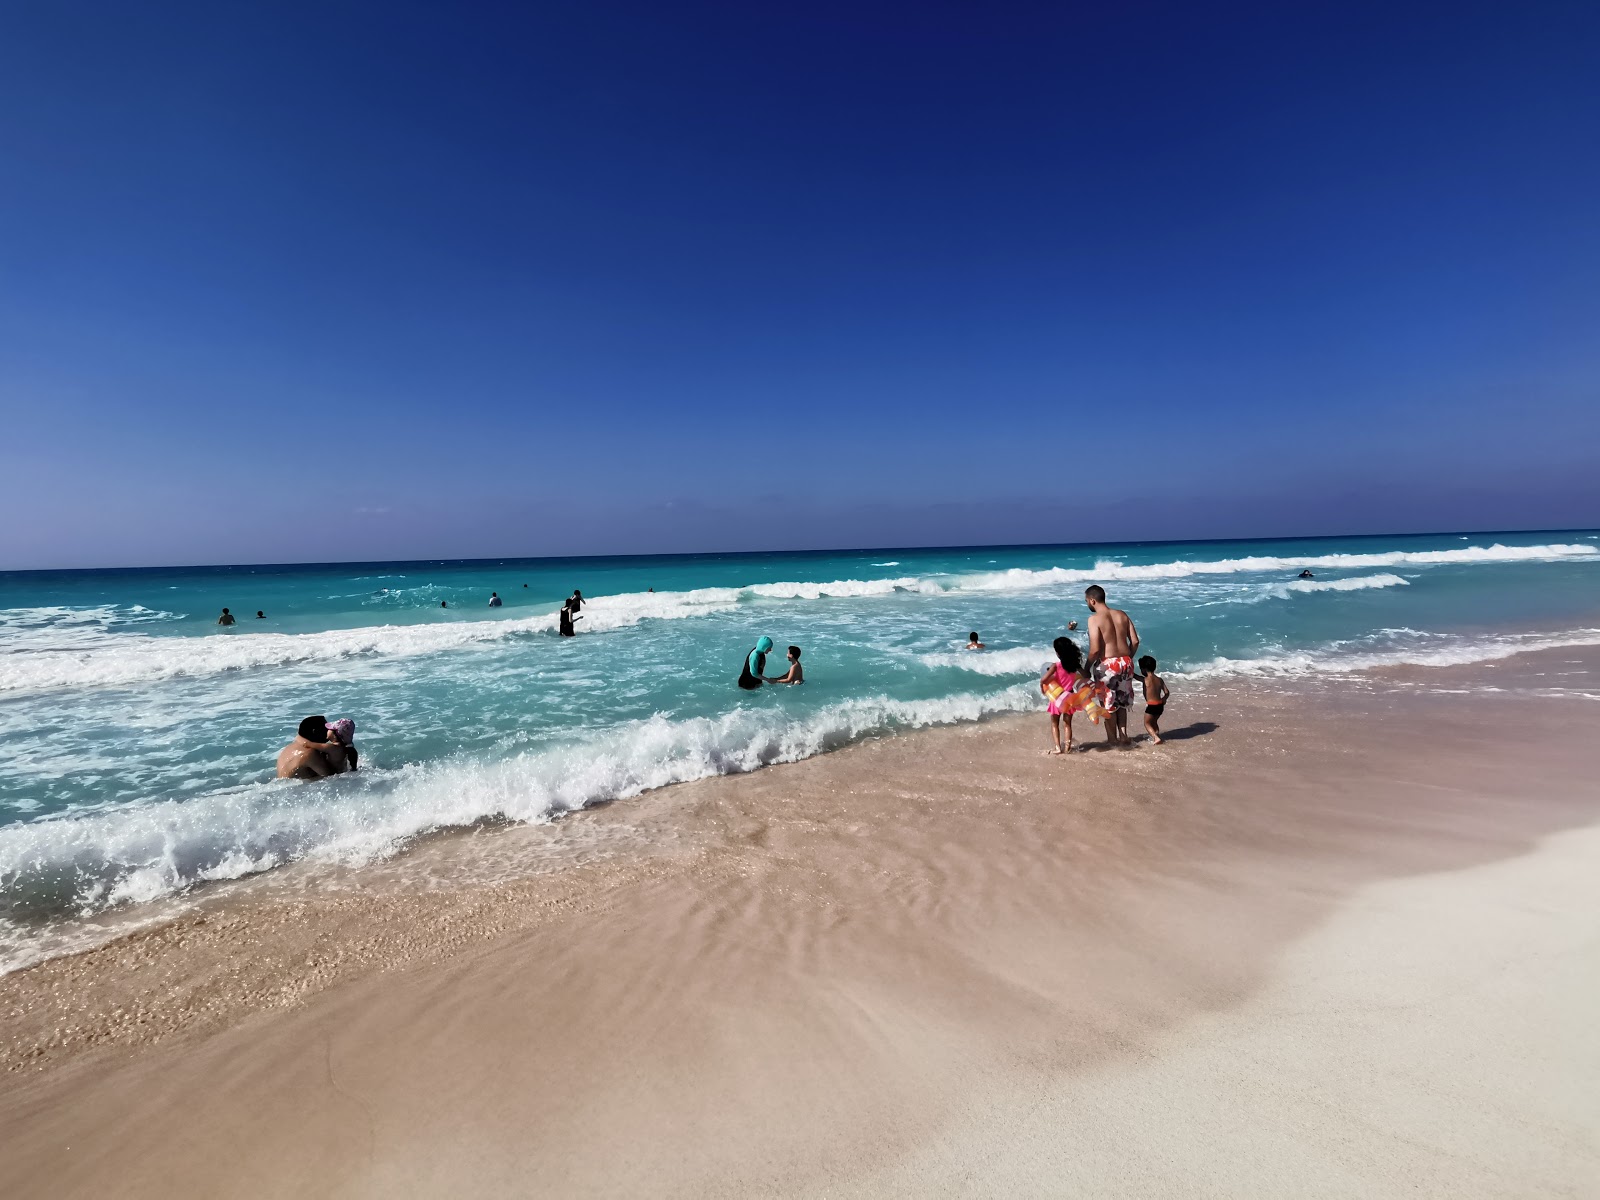 Fotografie cu Aida Beach - locul popular printre cunoscătorii de relaxare